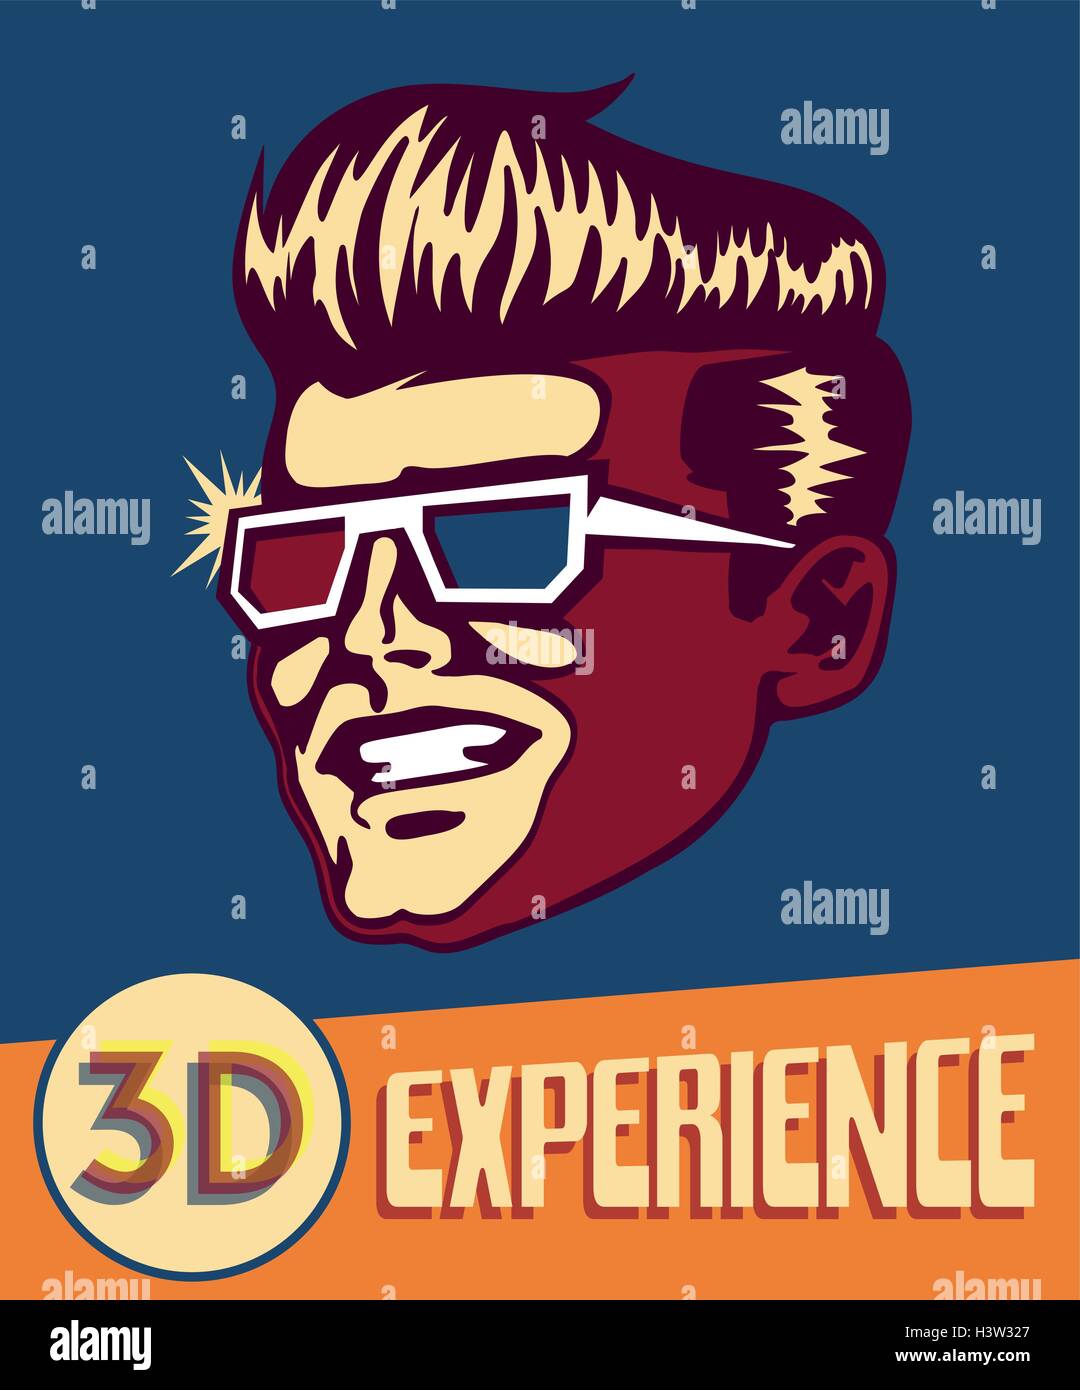 La experiencia 3d. Vintage Retro hombre vestido con gafas 3D, películas en 3D Cine, retro futurista sci-fi, gafas de realidad virtual Ilustración del Vector